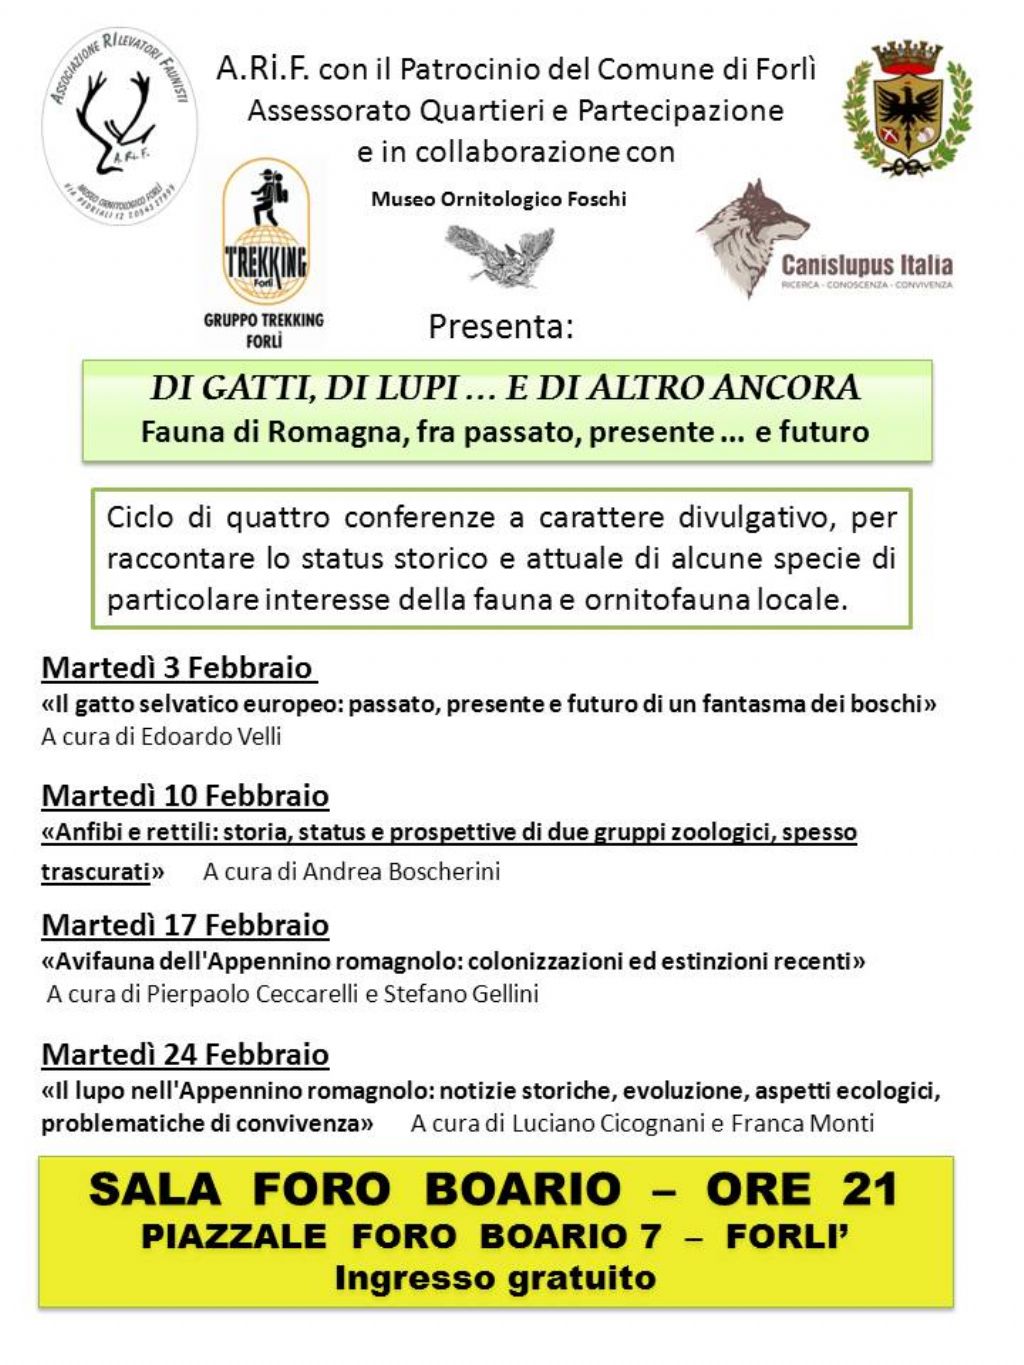 Conferenze sulla fauna in Romagna